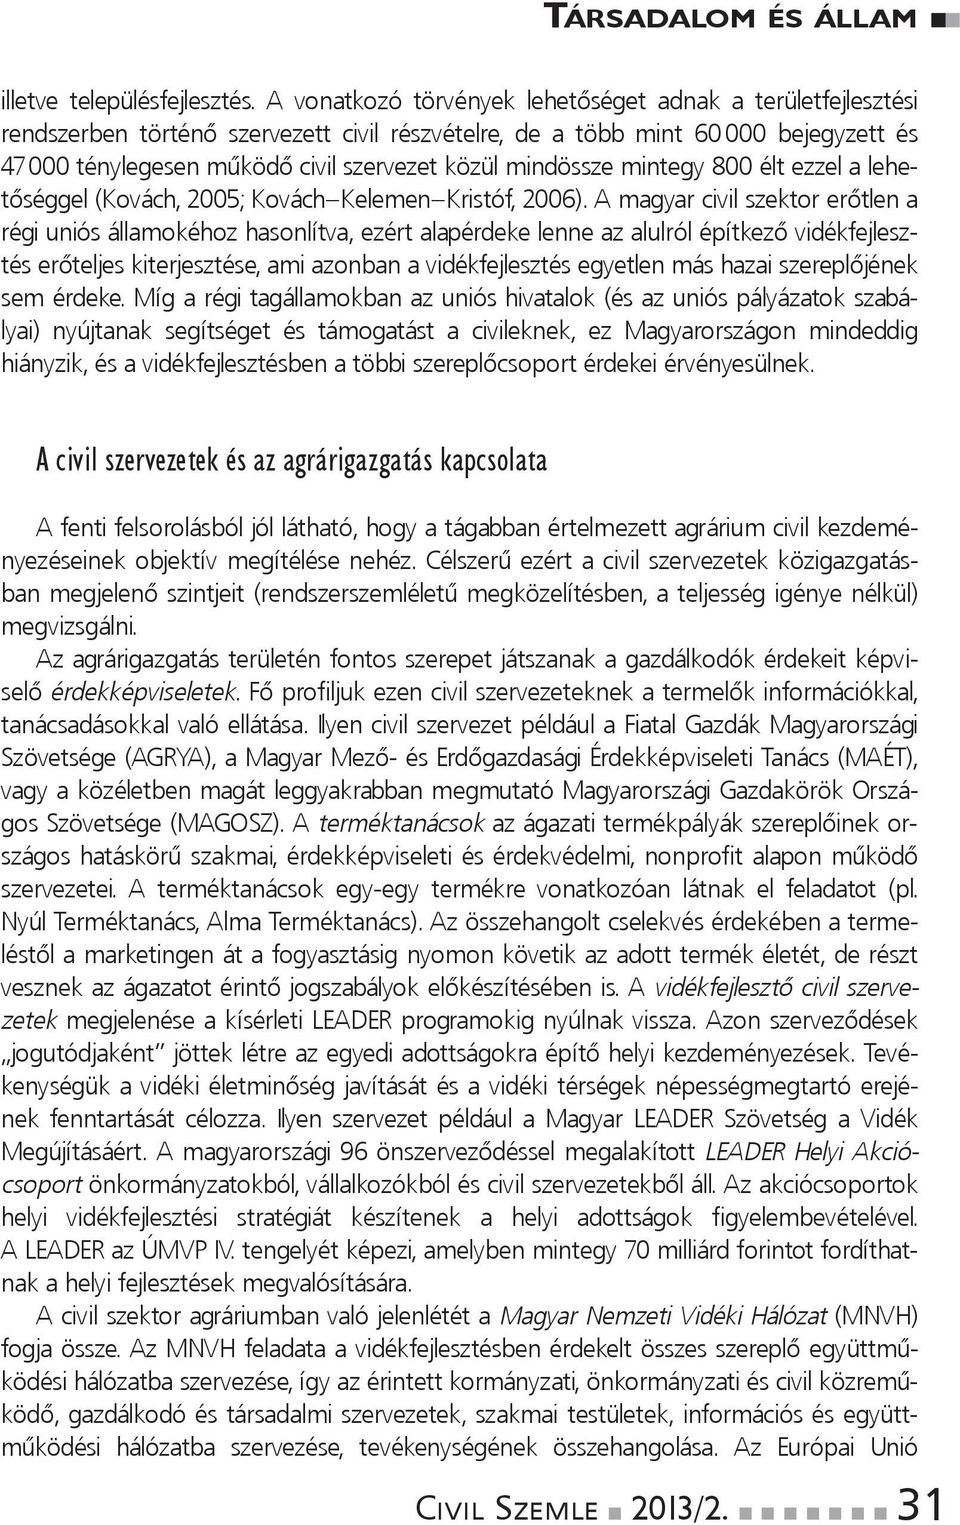 000ténylegesenműködőcivilszervezetközülmindösszemintegy800éltezzelalehetőséggel(Kovách,2005;Kovách Kelemen Kristóf,2006).